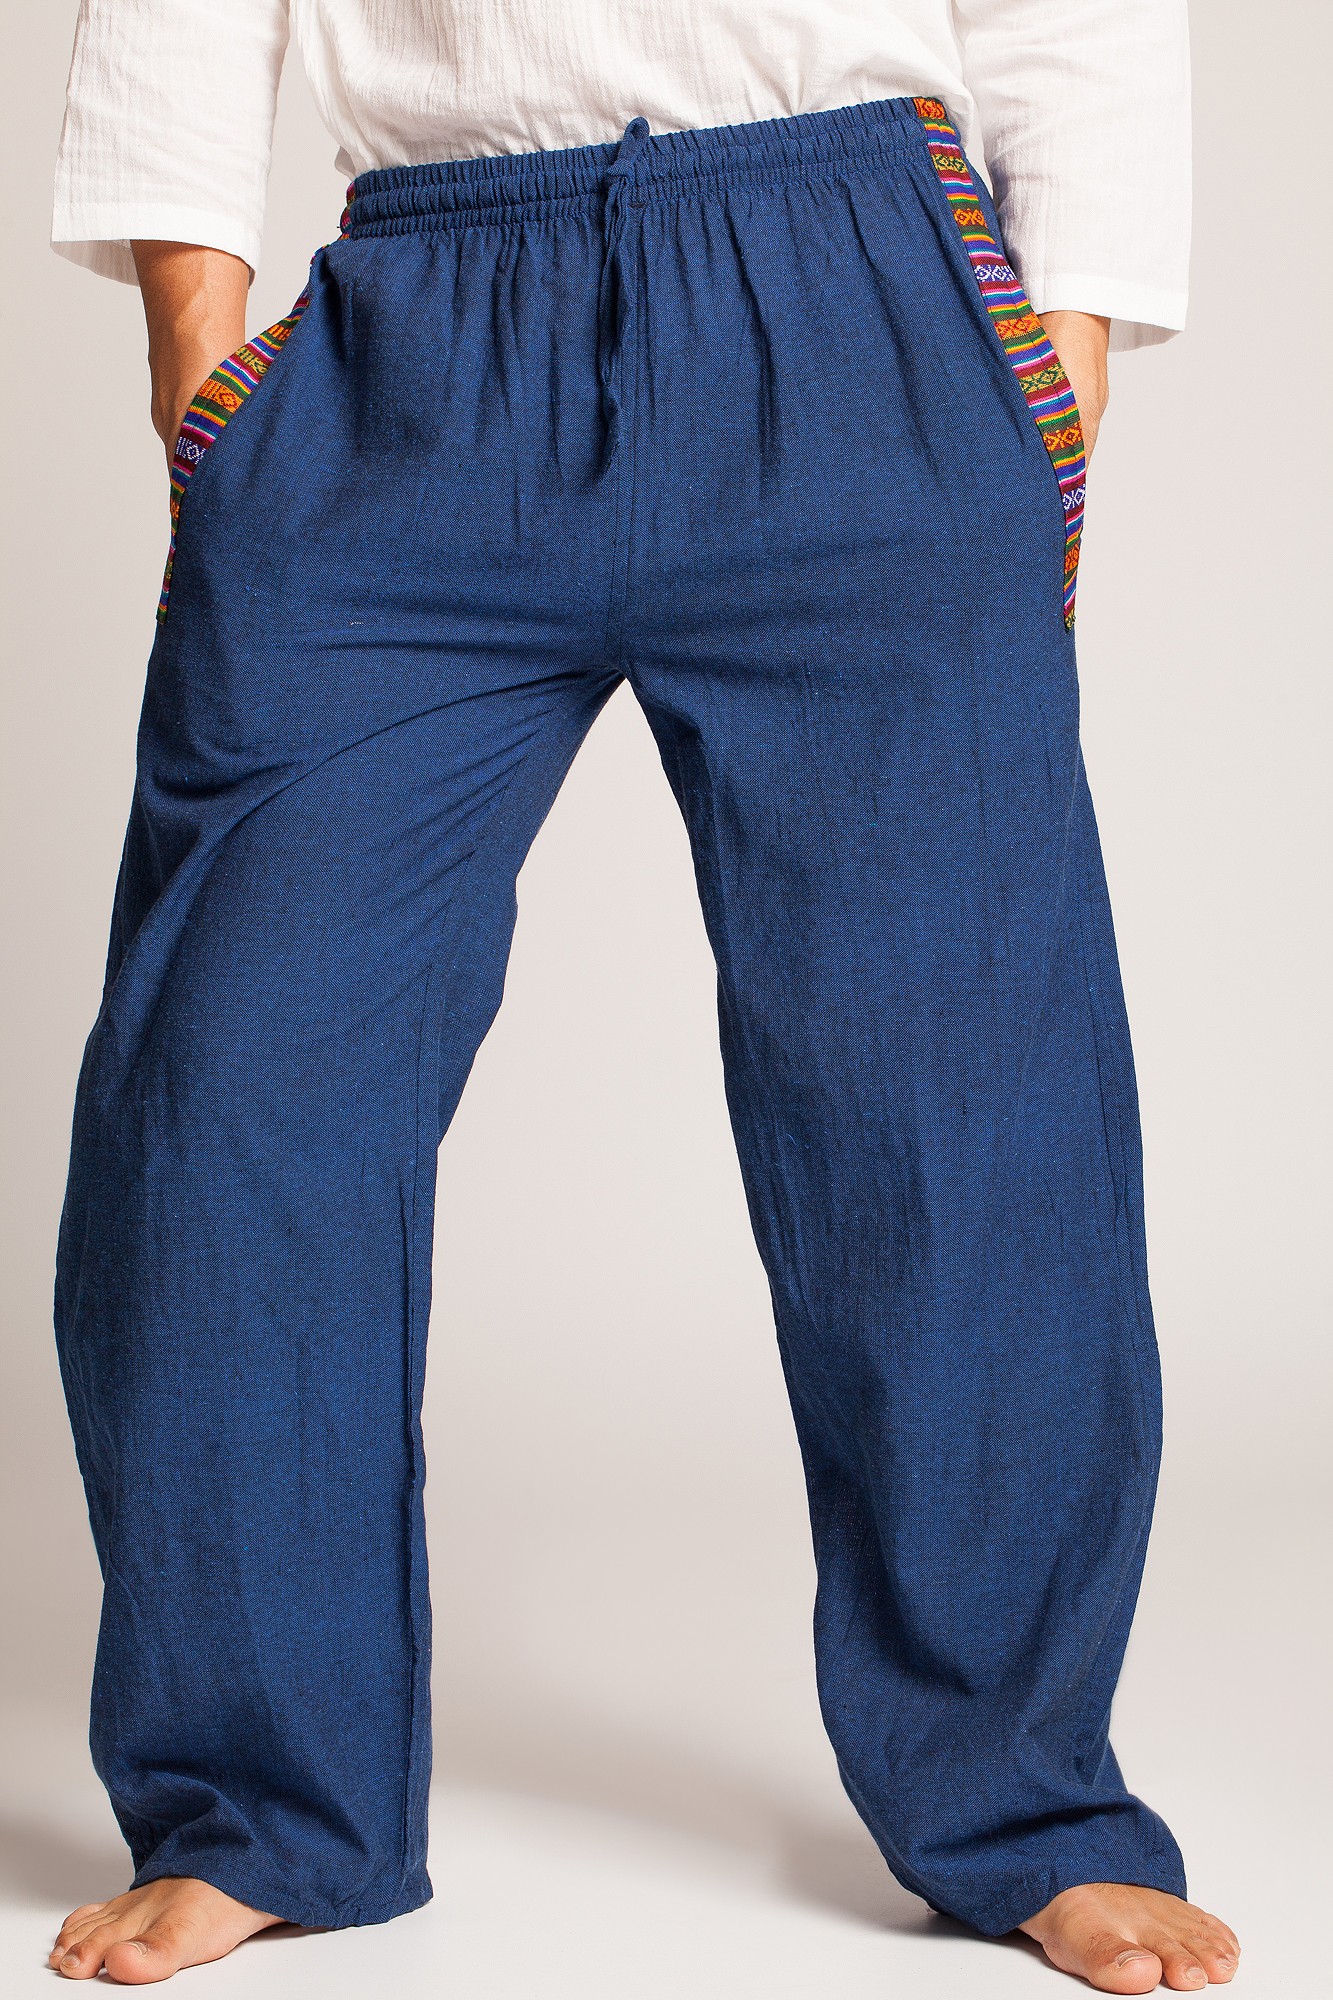 Pantaloni albastri cu motive etnice multicolore pe buzunare